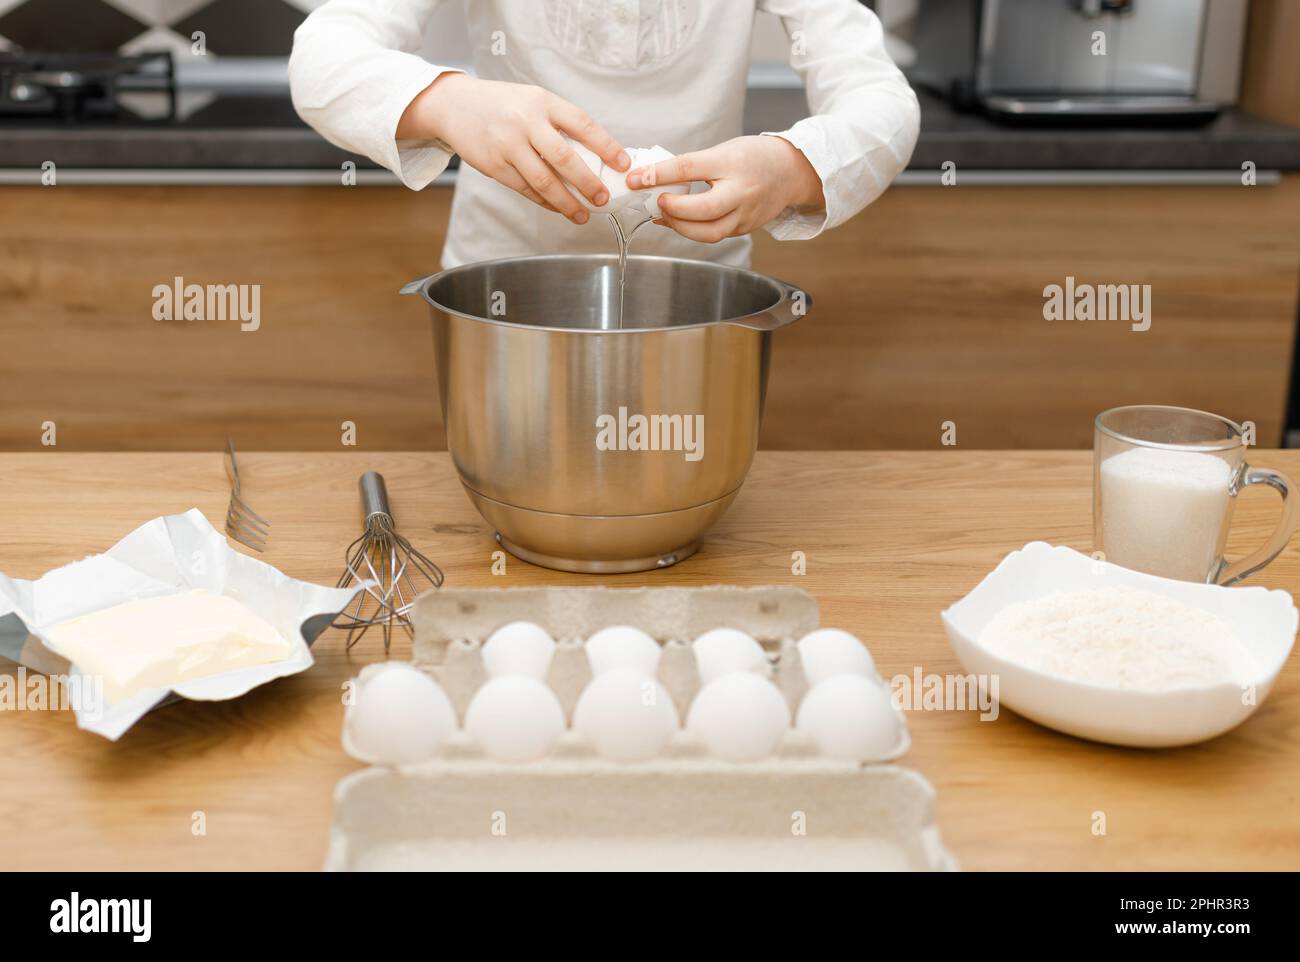 Mani di No viso bambino cracking, sbattere uovo, preparare e mescolare l'impasto in cucina moderna. Piccola ragazza d'aiuto. Tempo senza gadget Foto Stock